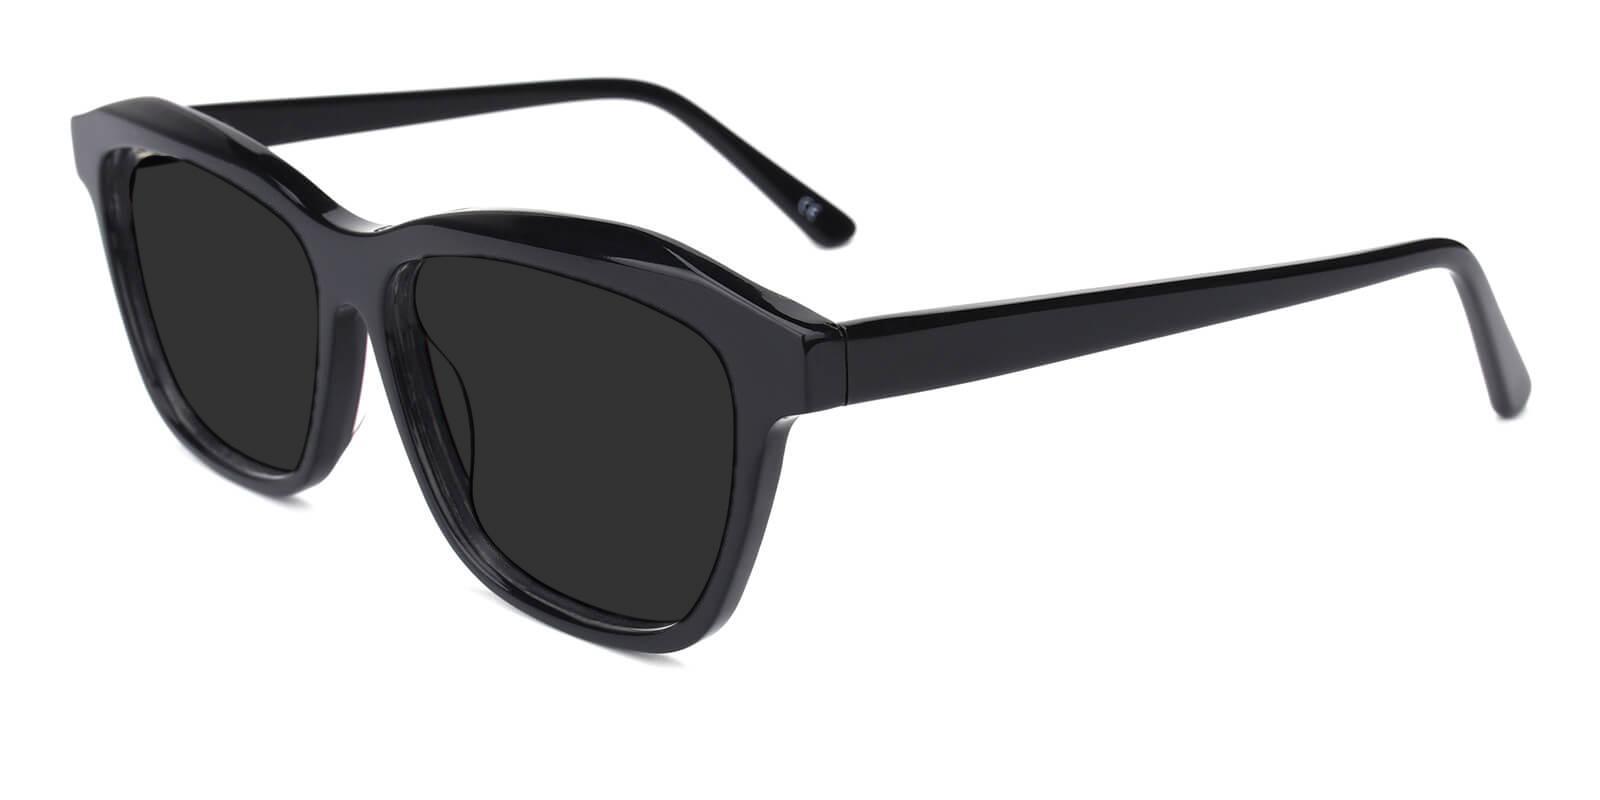 Morning Black Acetate SpringHinges , Sunglasses , UniversalBridgeFit Frames from ABBE Glasses